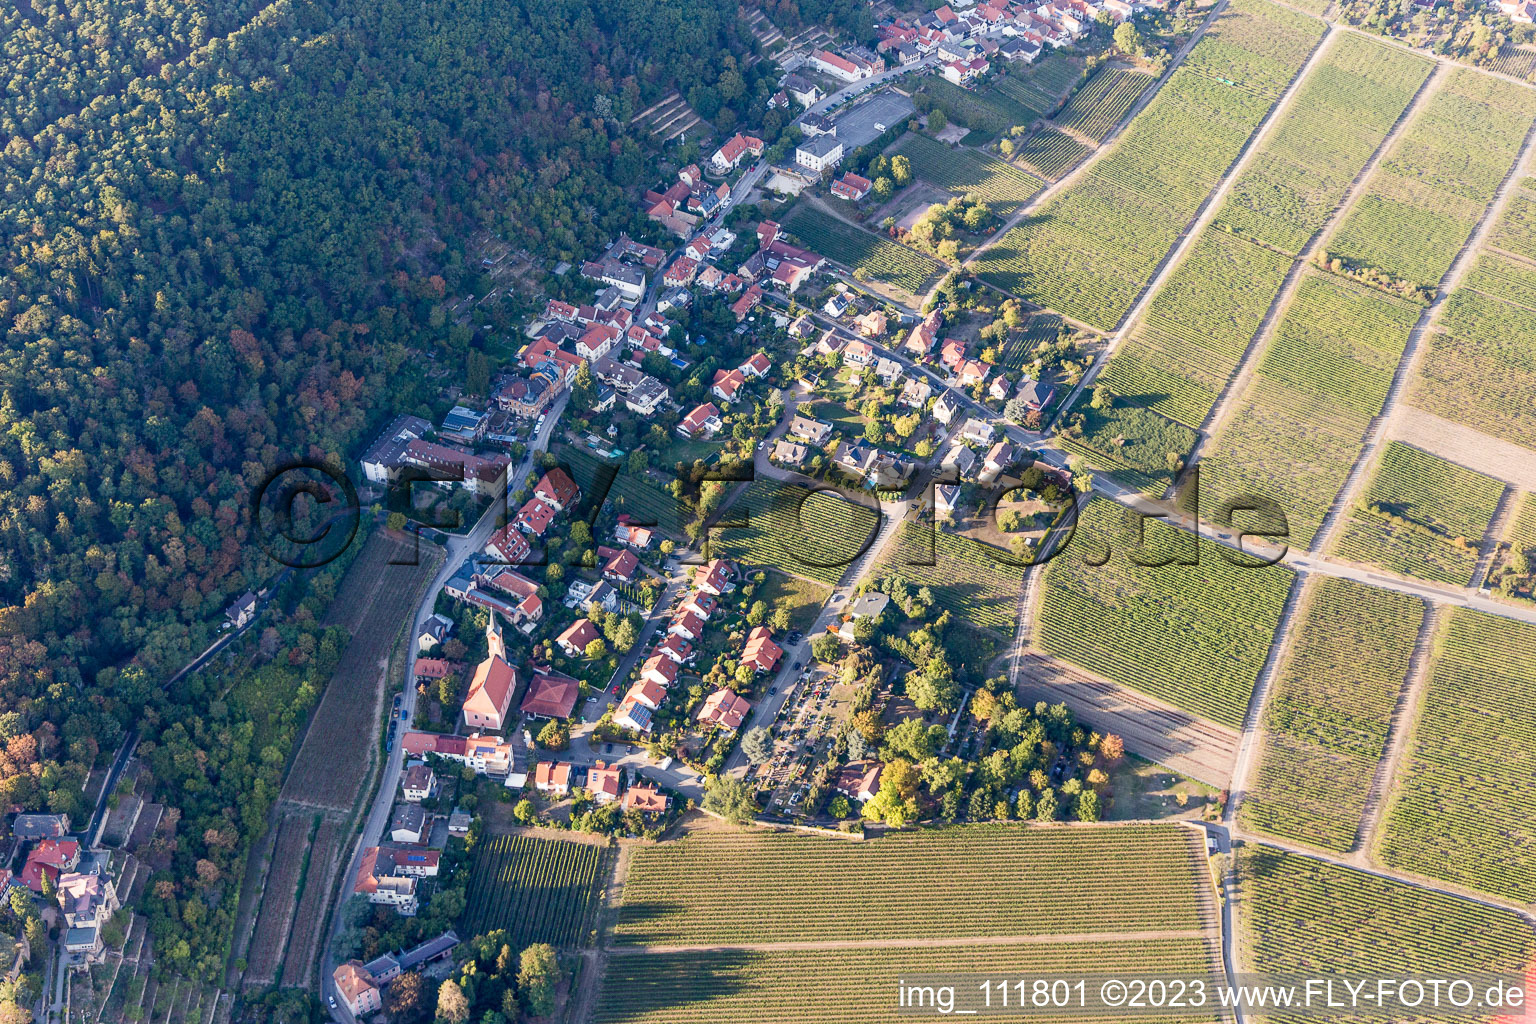 Luftbild von Ortsteil Haardt in Neustadt an der Weinstraße im Bundesland Rheinland-Pfalz, Deutschland